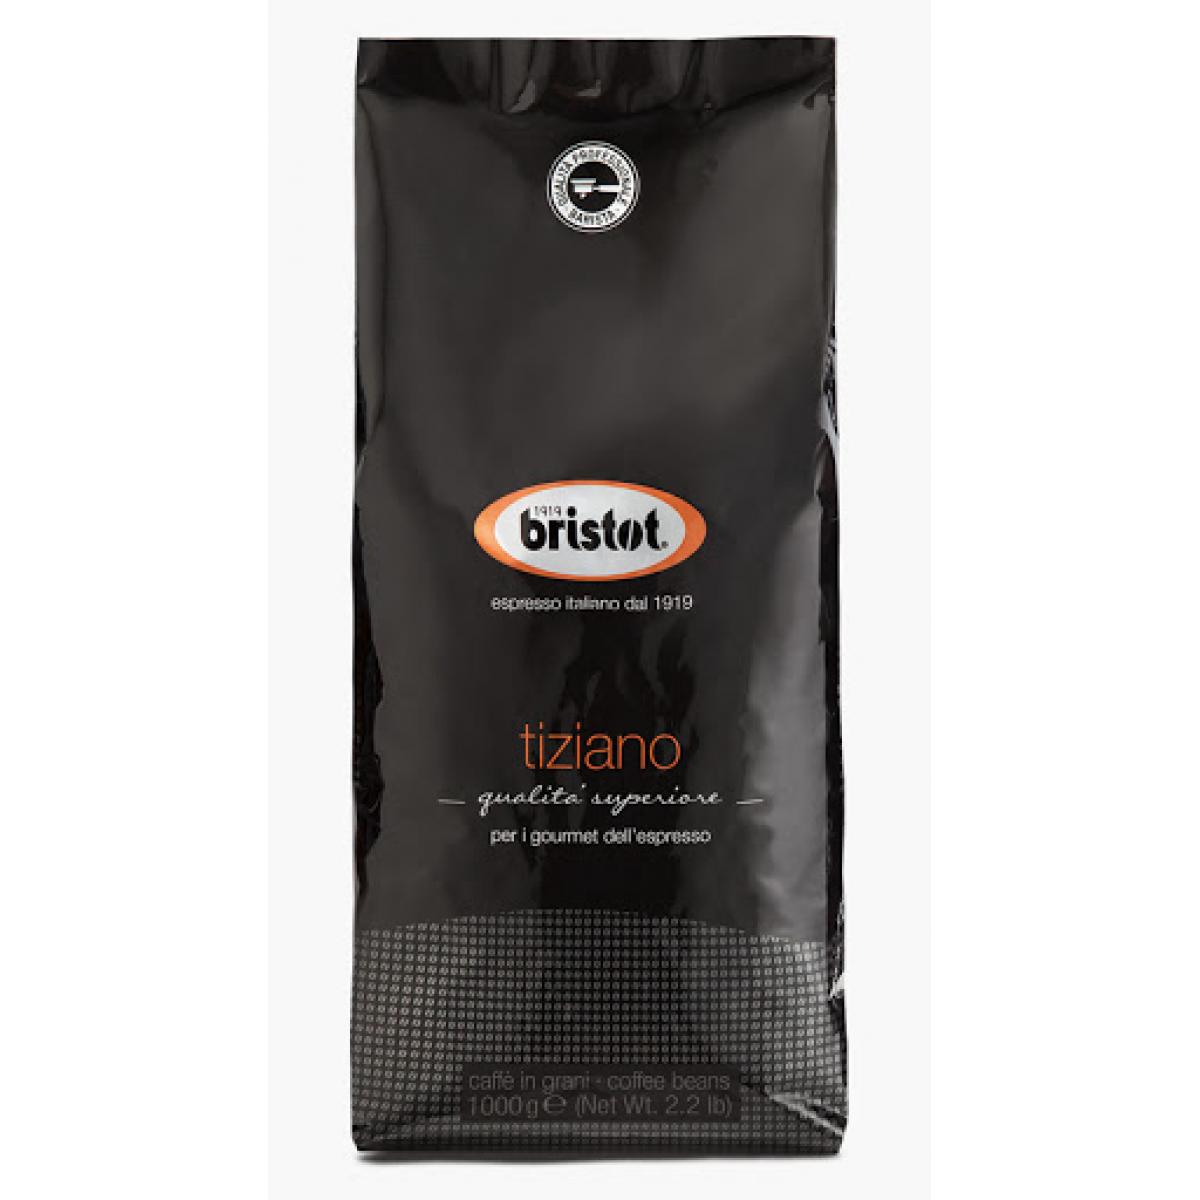 Топ зерен для кофемашины. Кофе в зернах Bristot Espresso. Кофе в зернах Bristot Tiziano. Кофе зерновой Bristot Espresso, 1000гр. Кофе в зернах Bristot Espresso Plus.